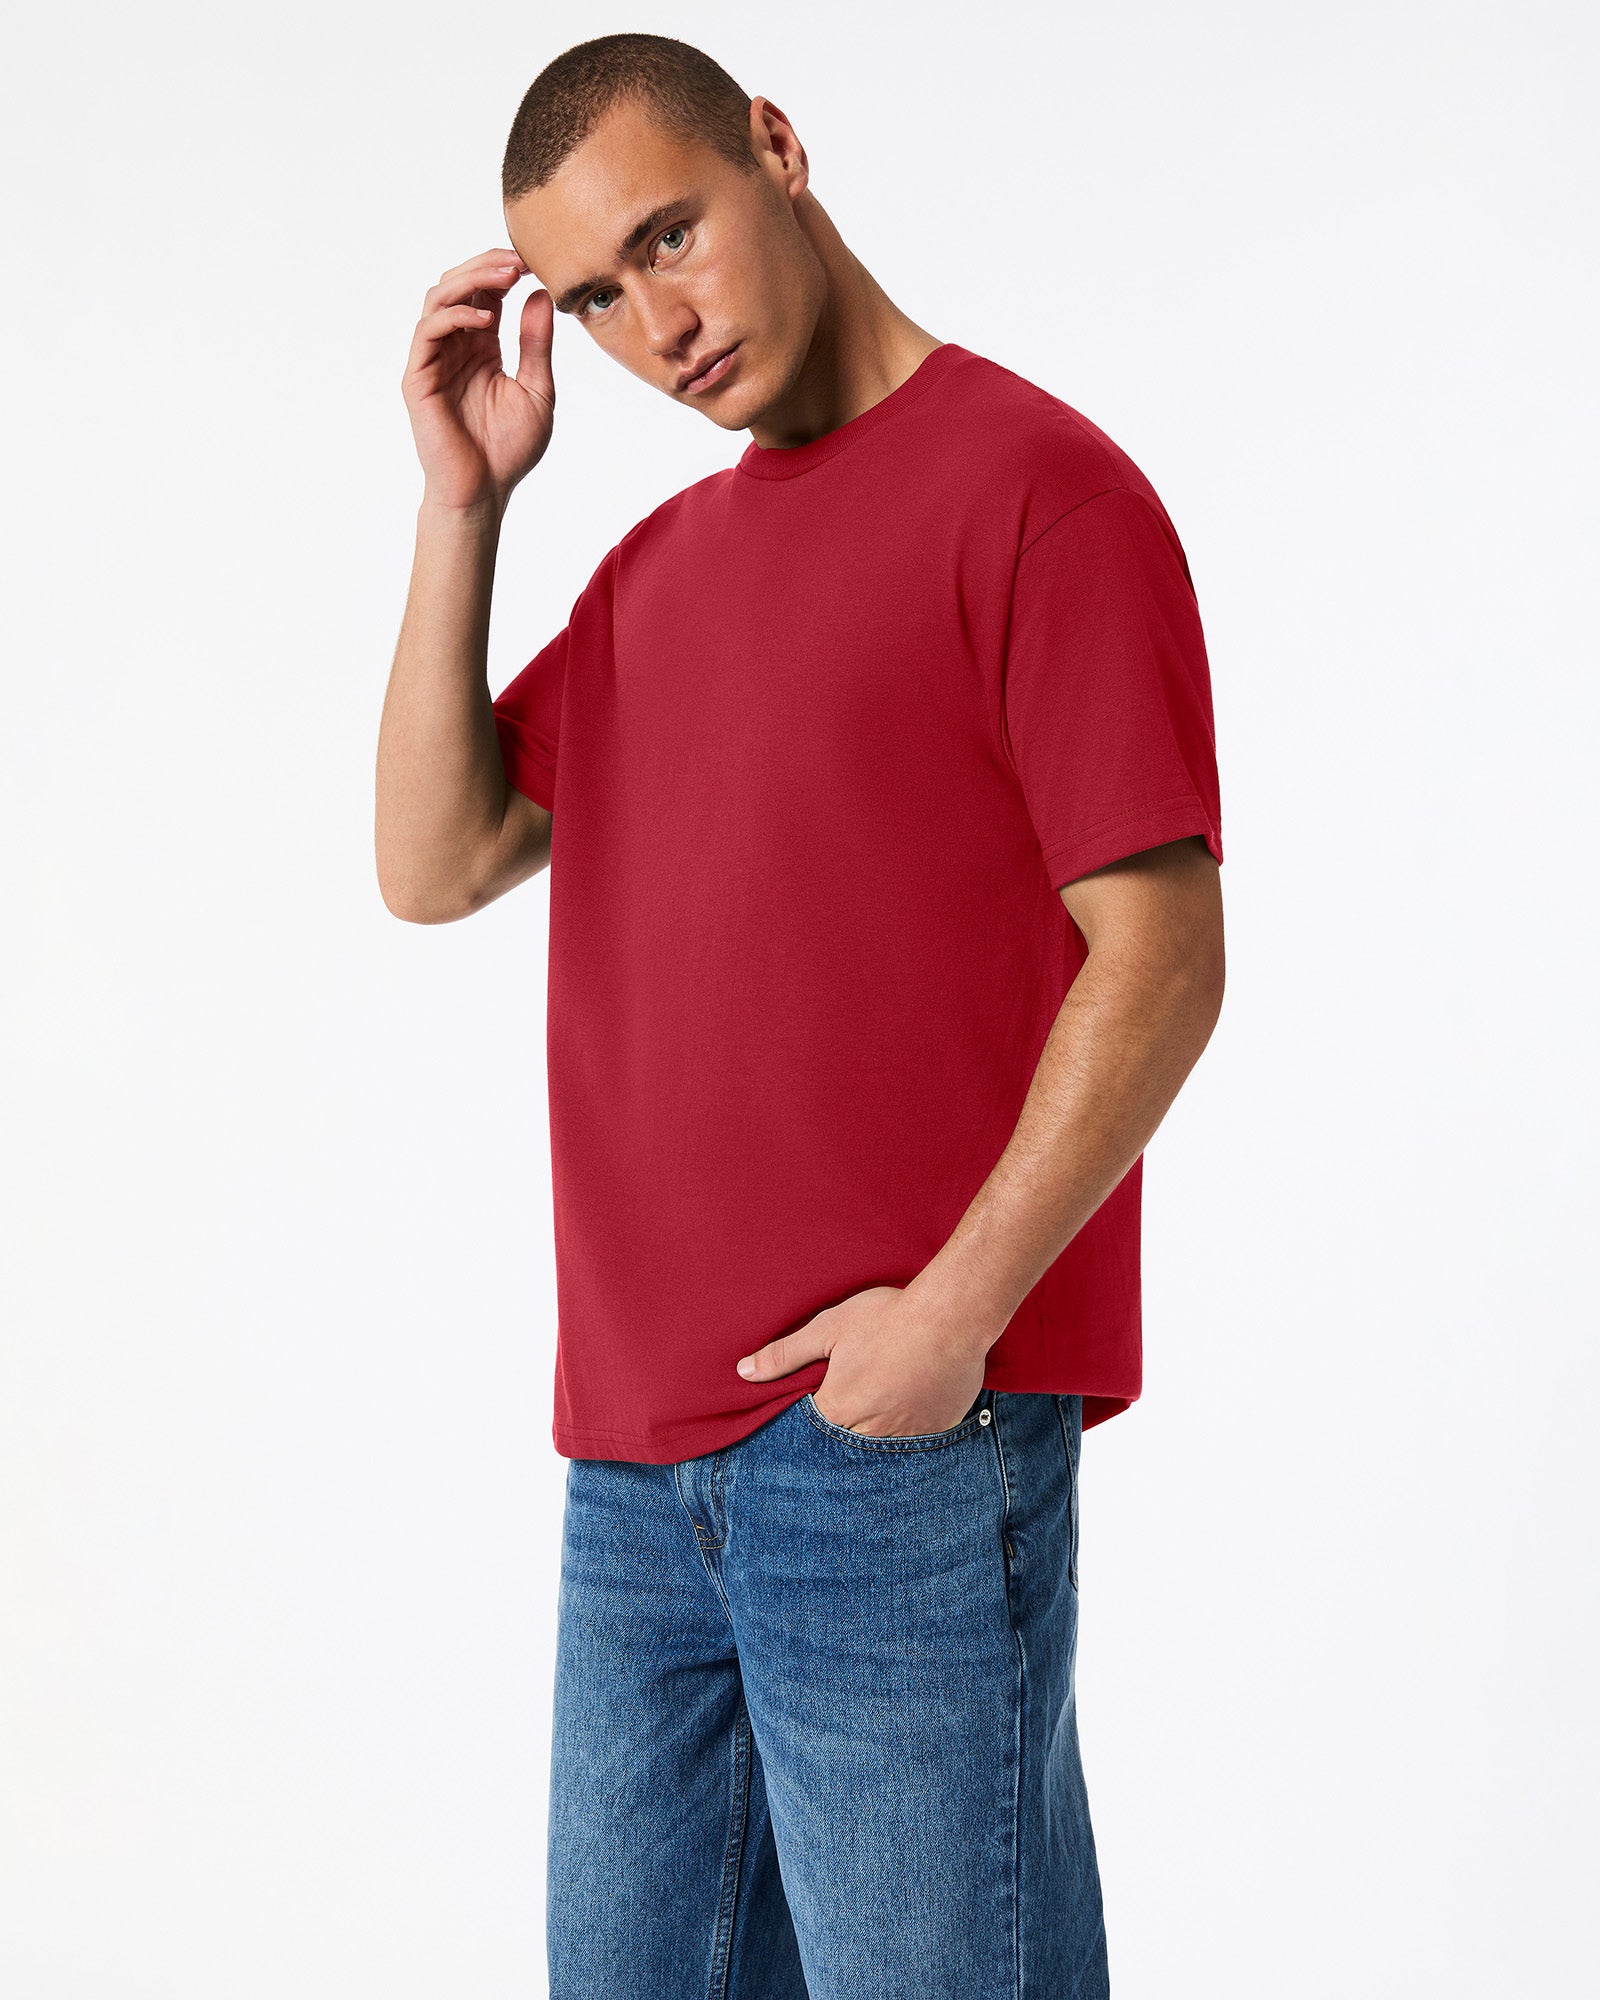 Heavyweight Unisex T-Shirt - Cardinal Red